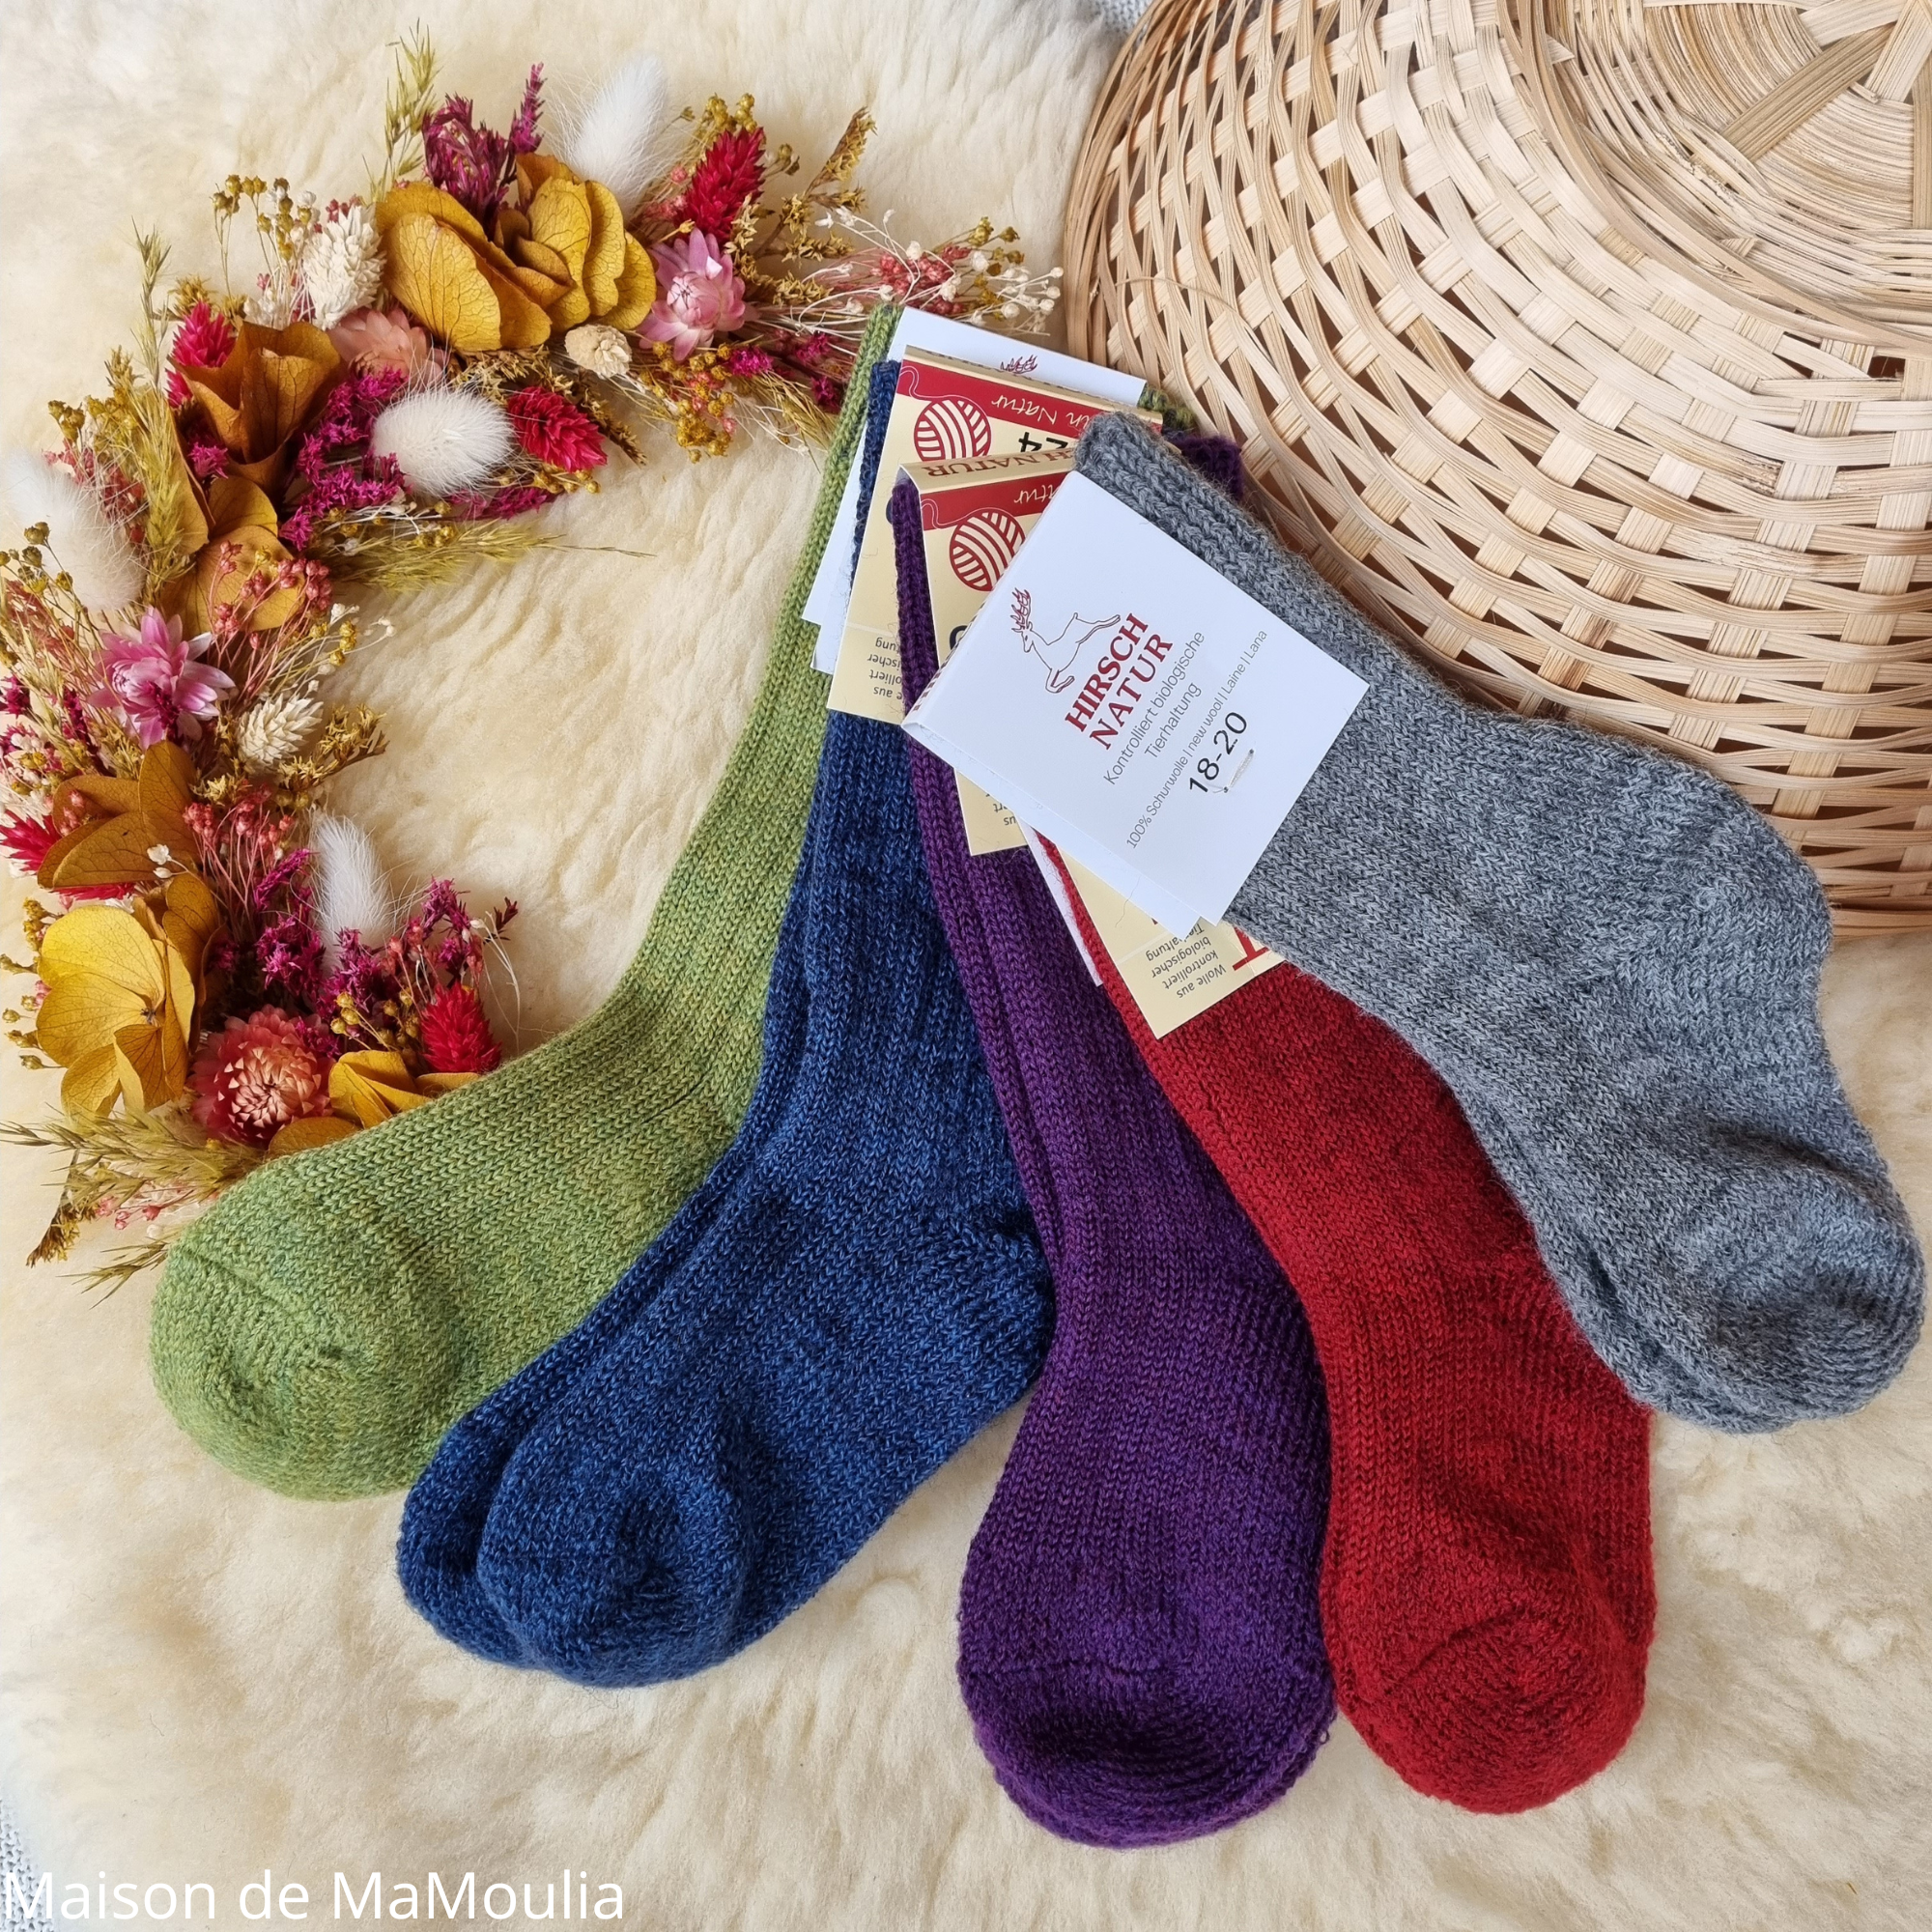 11-chaussettes-chaudes-pure-laine-bio-ecologique-hirsch-natur-bebe-enfant-maison-de-mamoulia-tres-epaisses--